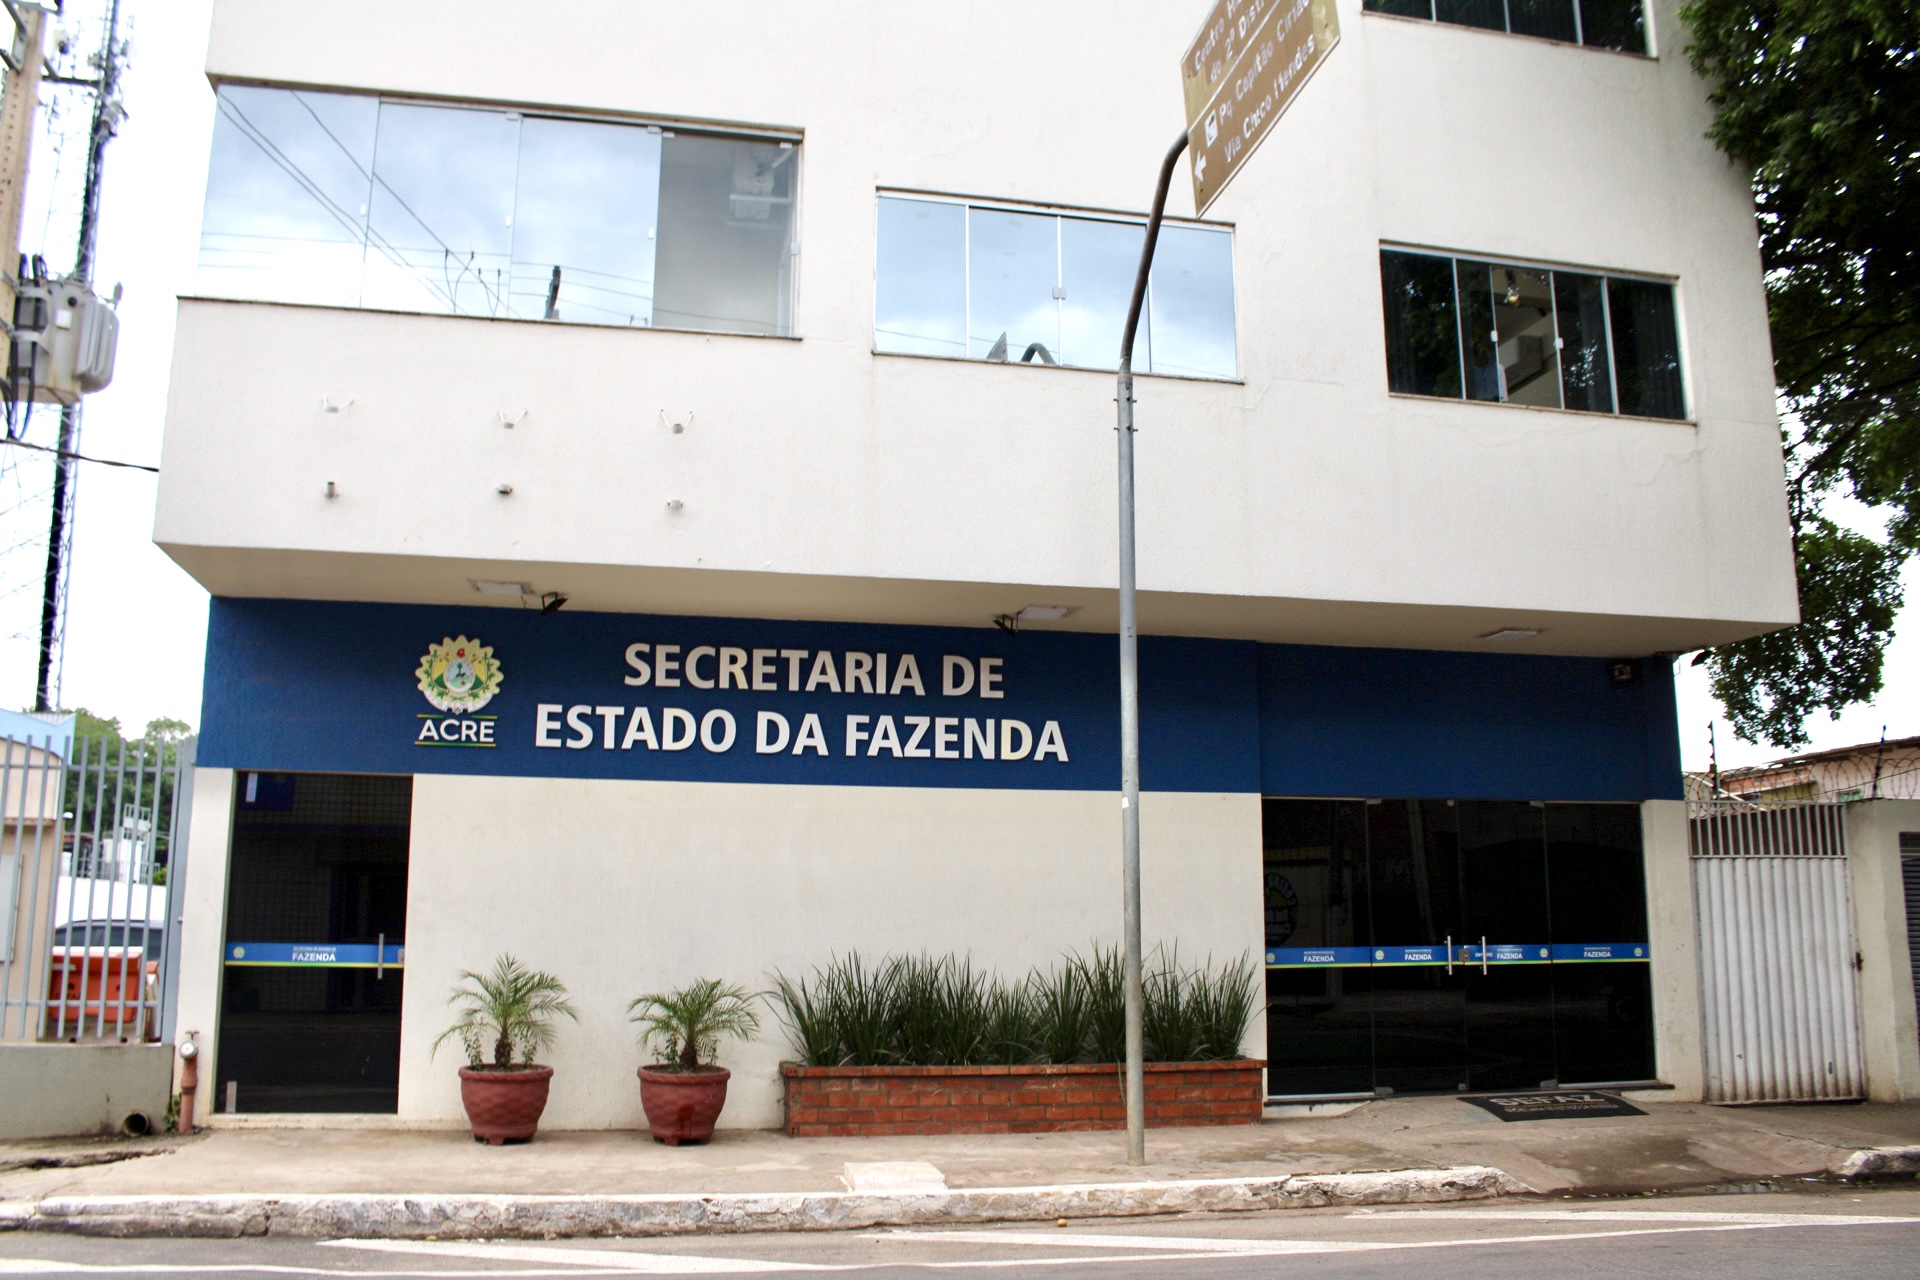 Governo divulga lista provisória de isenção de taxa para vagas PCD para o concurso público da Sefaz